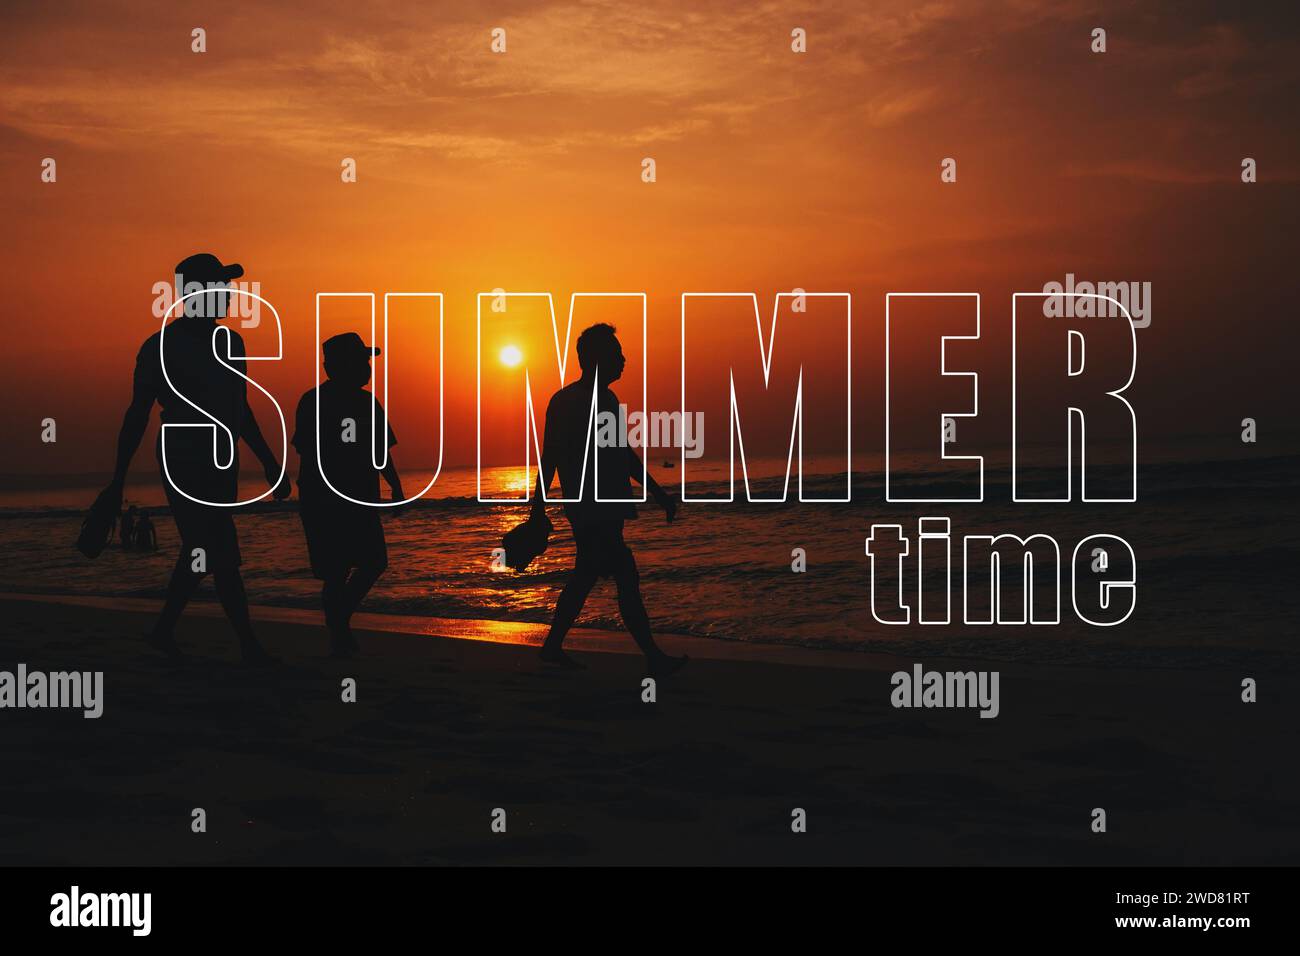 Carte de voeux avec l'heure d'inscription de l'été. Silhouettes de trois hommes marchant le long de la plage au bord de la mer contre un coucher de soleil orange Banque D'Images